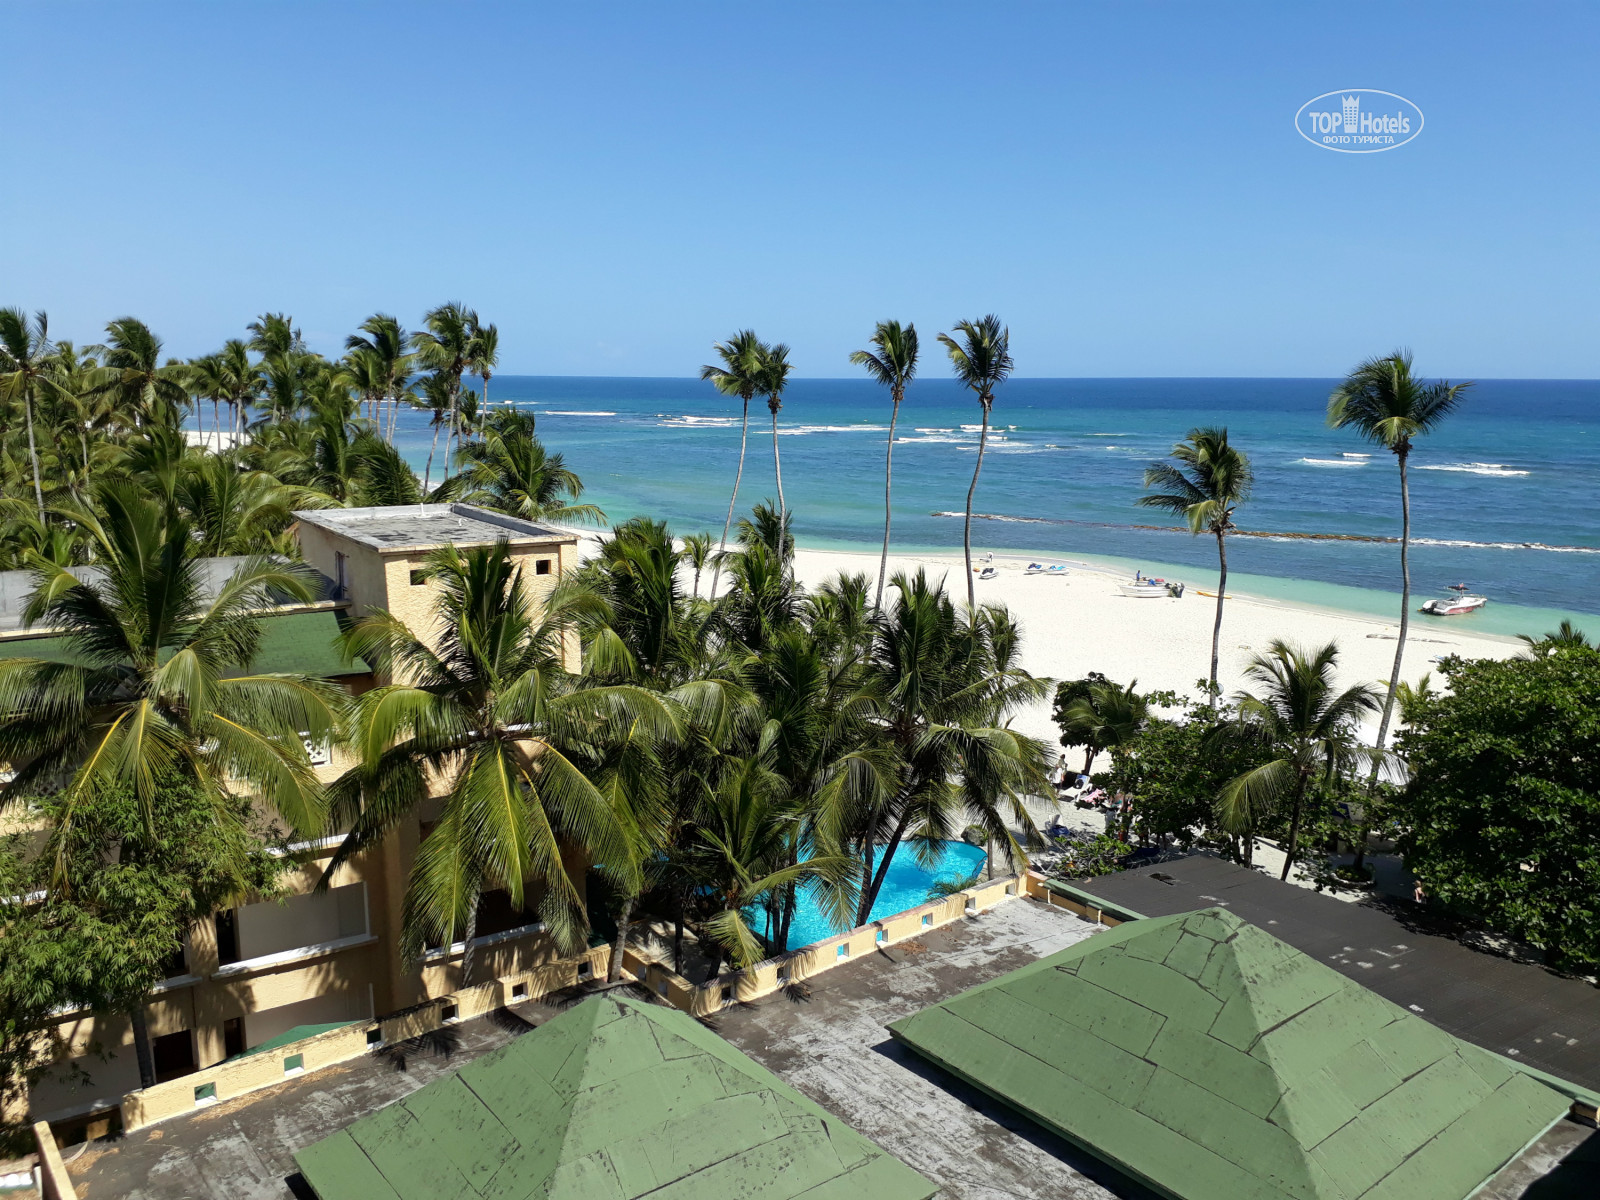 Costa caribe beach hotel resort венесуэла. Costa Caribe Beach 3 Венесуэла. Отели в Венесуэла Коста Кариба. Корал Коста Карибе Доминикана. Costa Caribe Beach Hotel & Resort 3*.